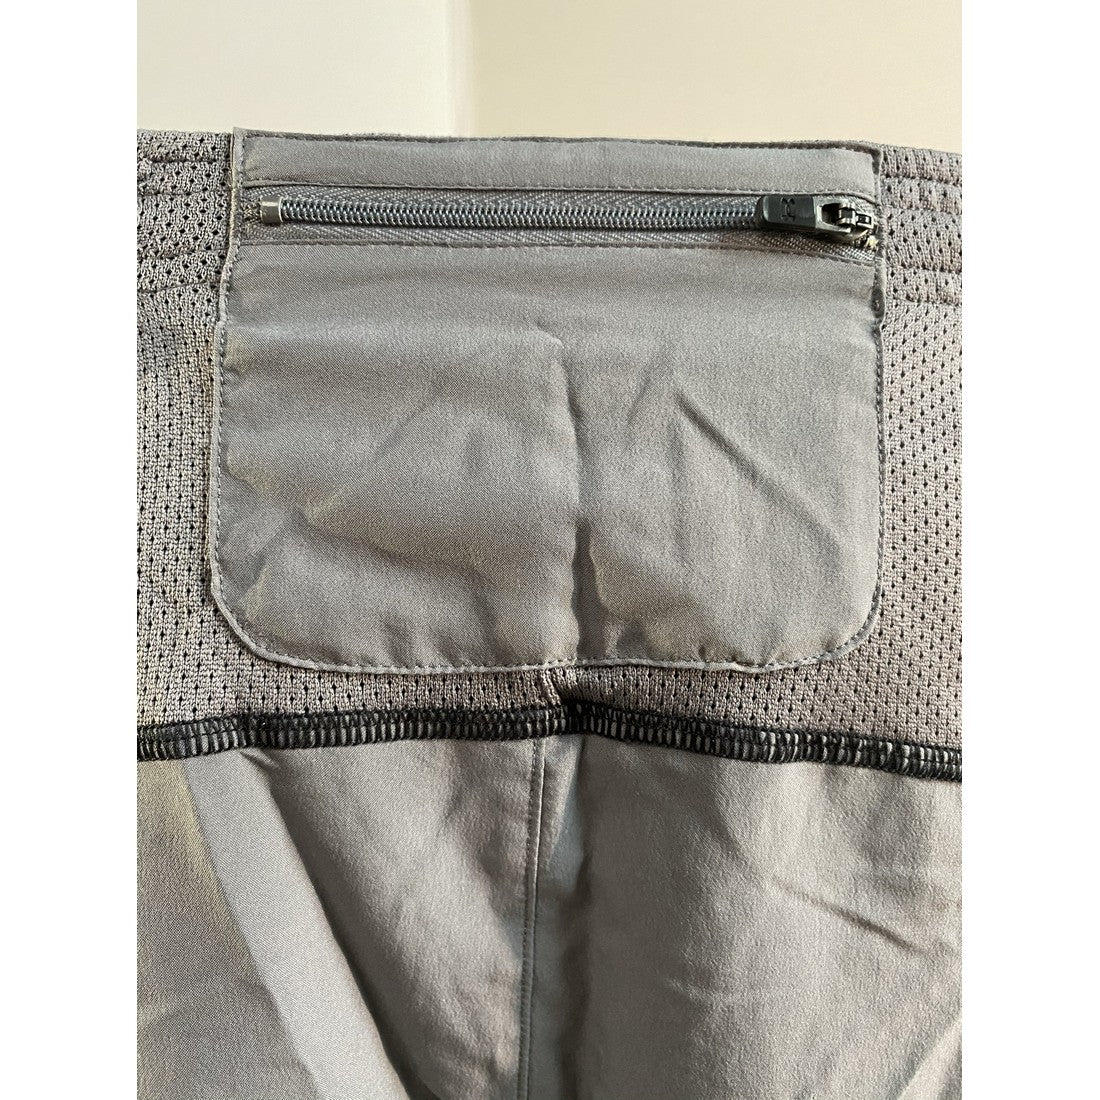 Pantalon corto (Short) Parcer 2.0 para hombre de Under Armour